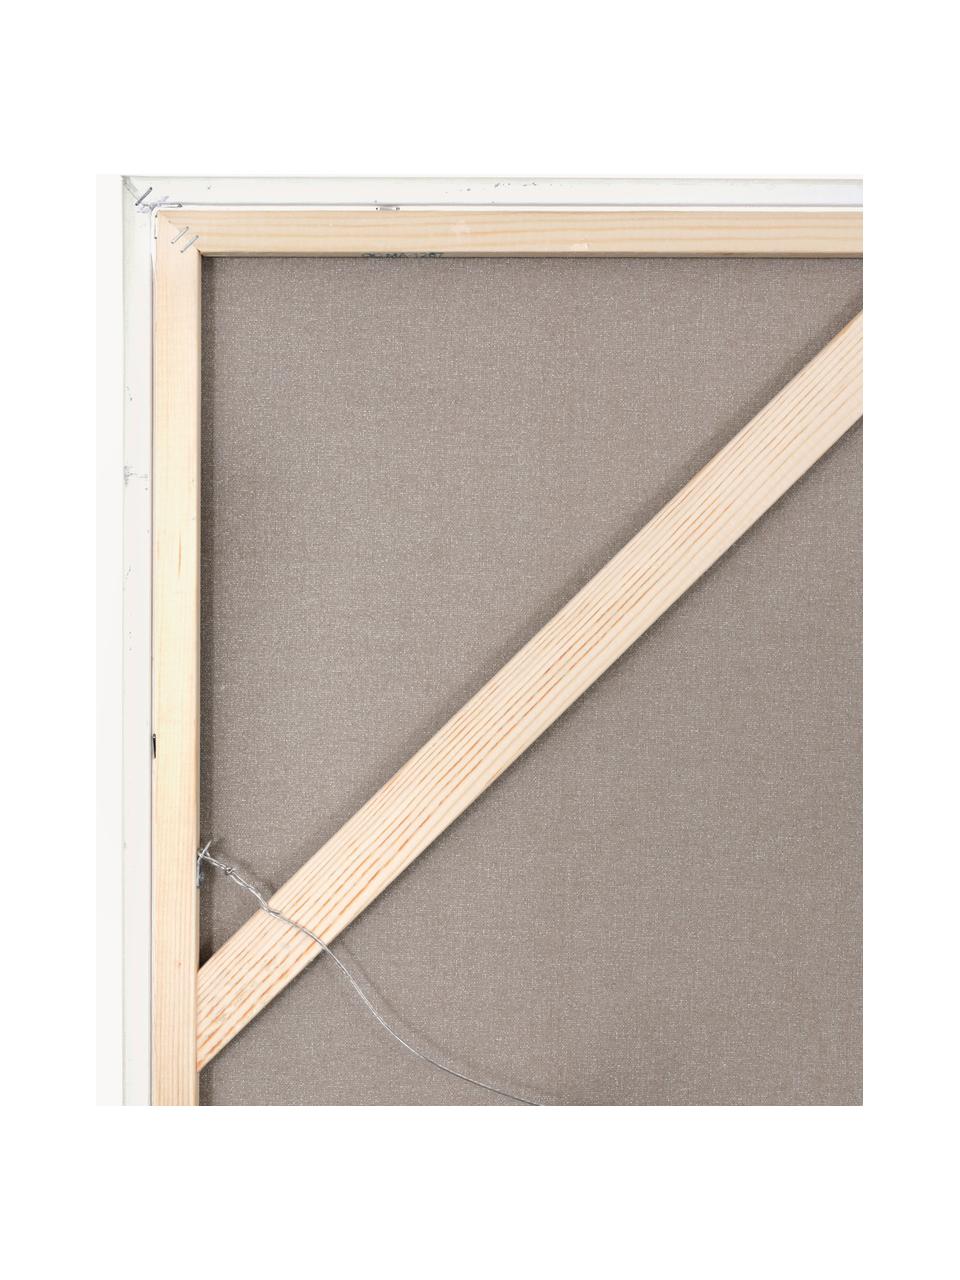 Handgemaltes Leinwandbild Playblack mit Holzrahmen, Rahmen: Eichenholz, beschichtet, Design 2, B 102 x H 102 cm